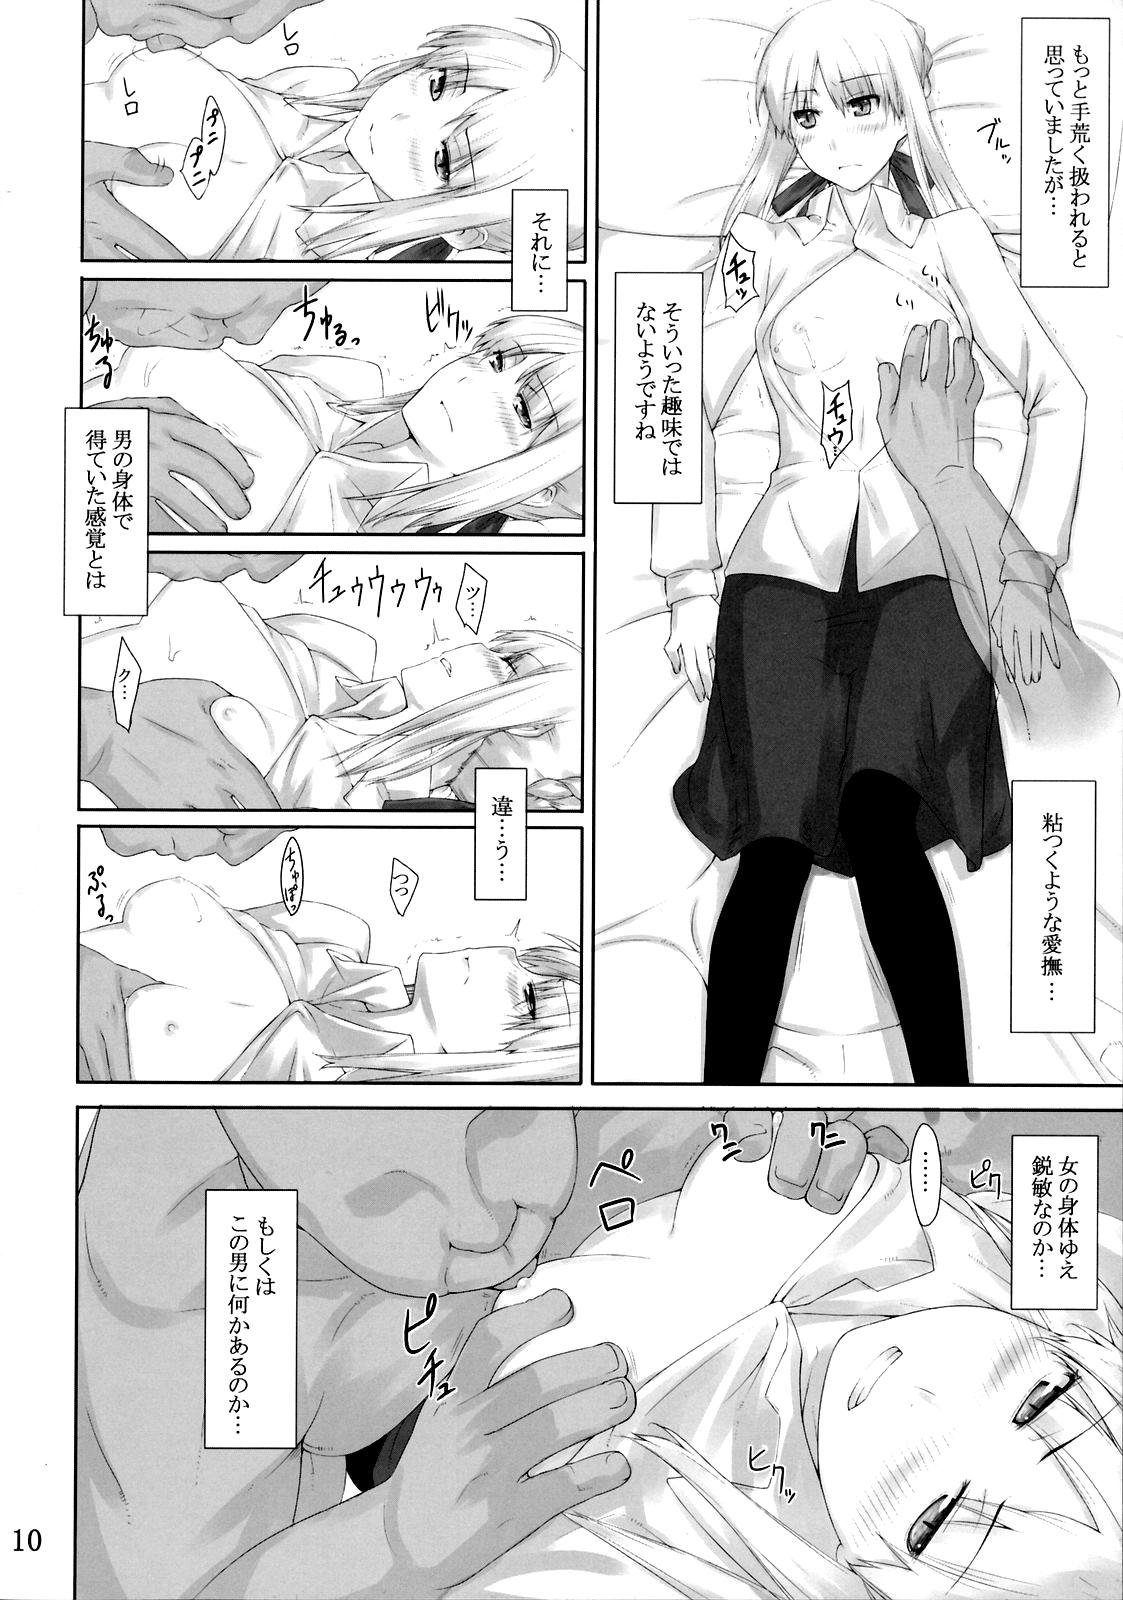 Ball Licking Tohsaka-ke no Kakei Jijou 3 - Fate stay night Underwear - Page 9